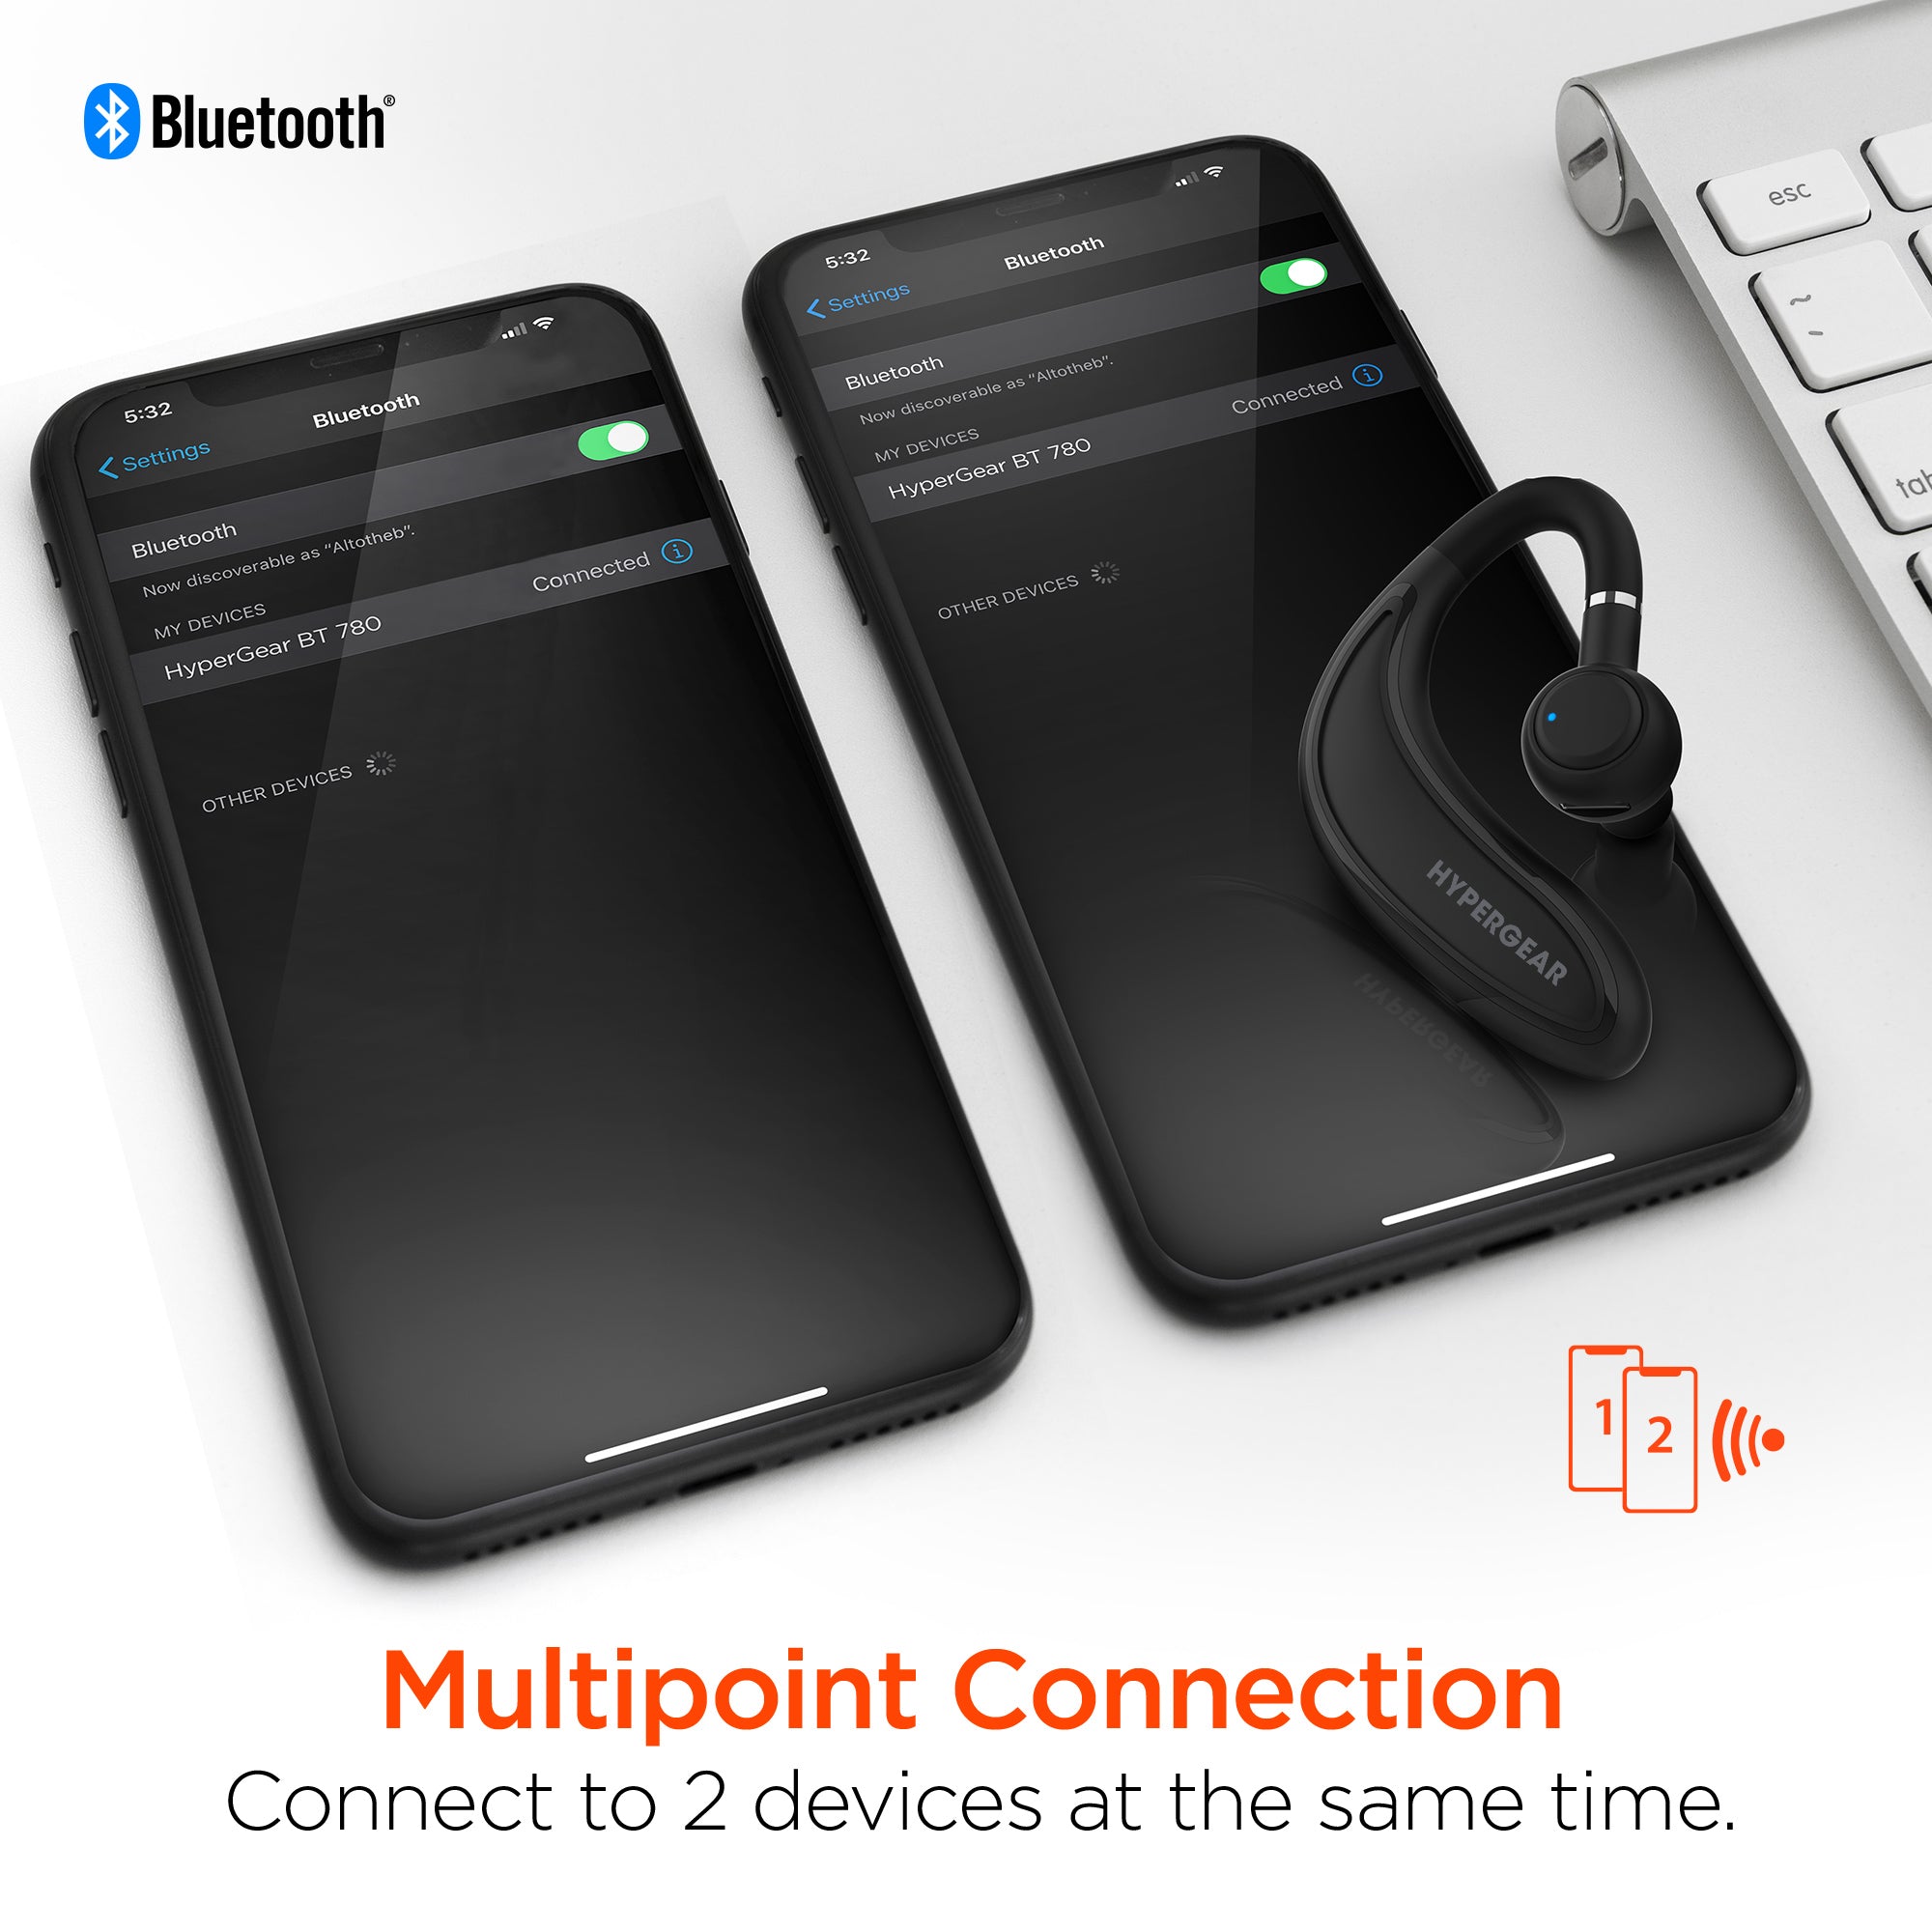 Bluetooth Headset - BT 780 HD Wireless Earpiece